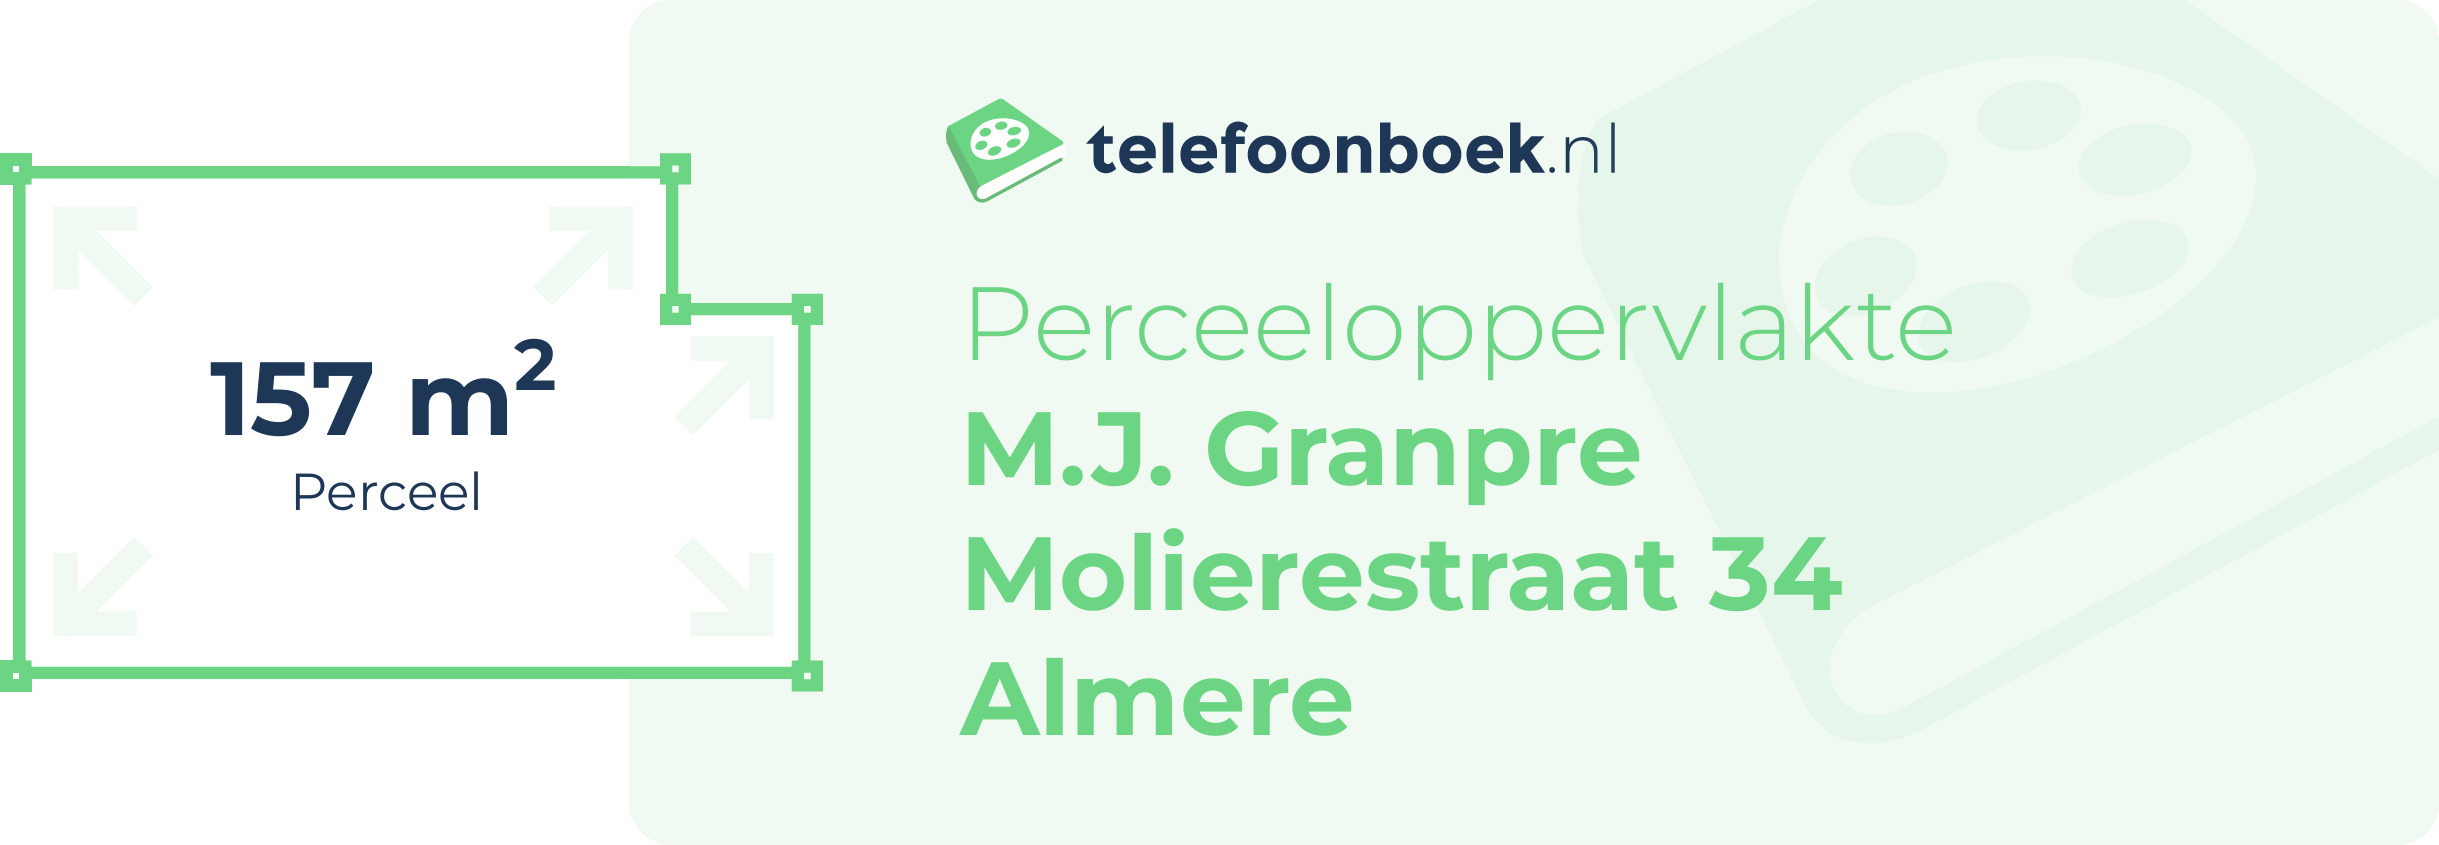 Perceeloppervlakte M.J. Granpre Molierestraat 34 Almere